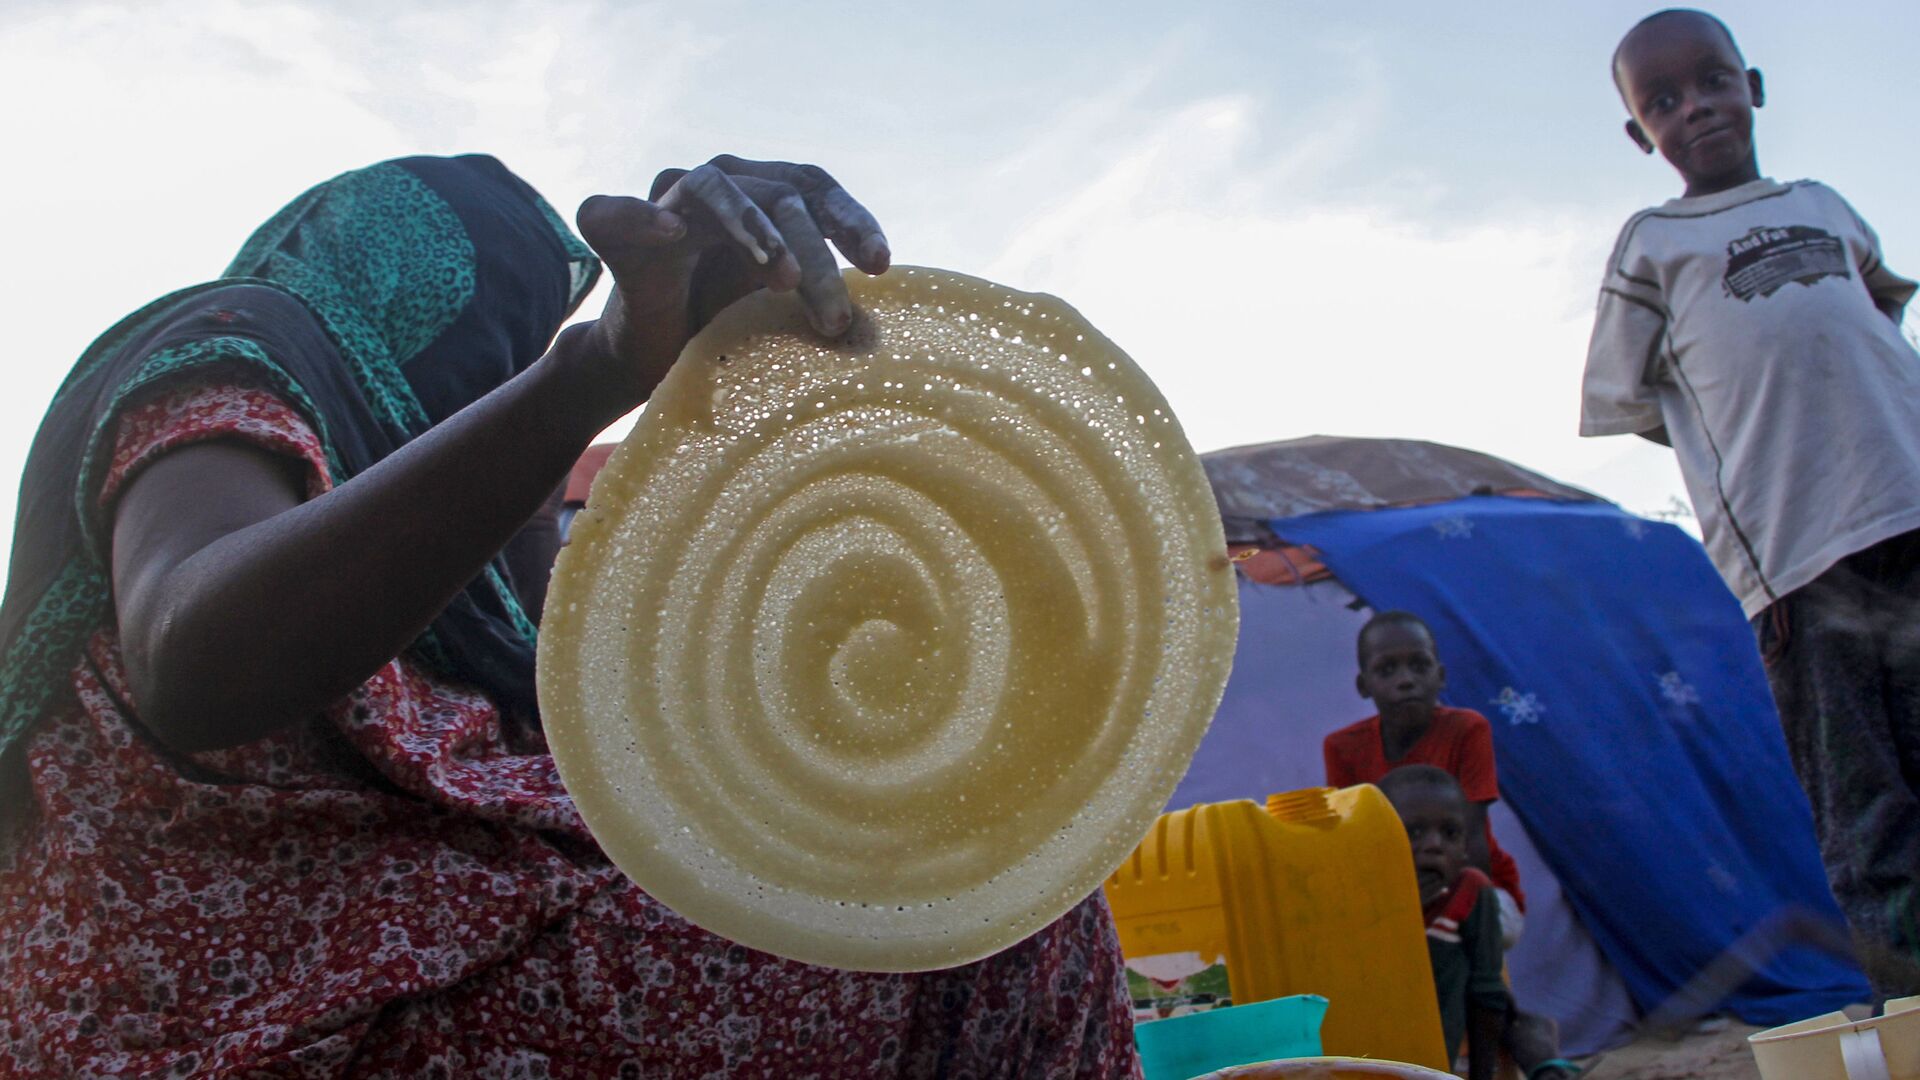 امرأة صومالية تصنع الفطائر لعائلتها في رمضان، في مخيم للنازحين في حي دار السلام بالعاصمة مقديشو، الصومال، 16 أبريل 2021 - سبوتنيك عربي, 1920, 23.11.2021